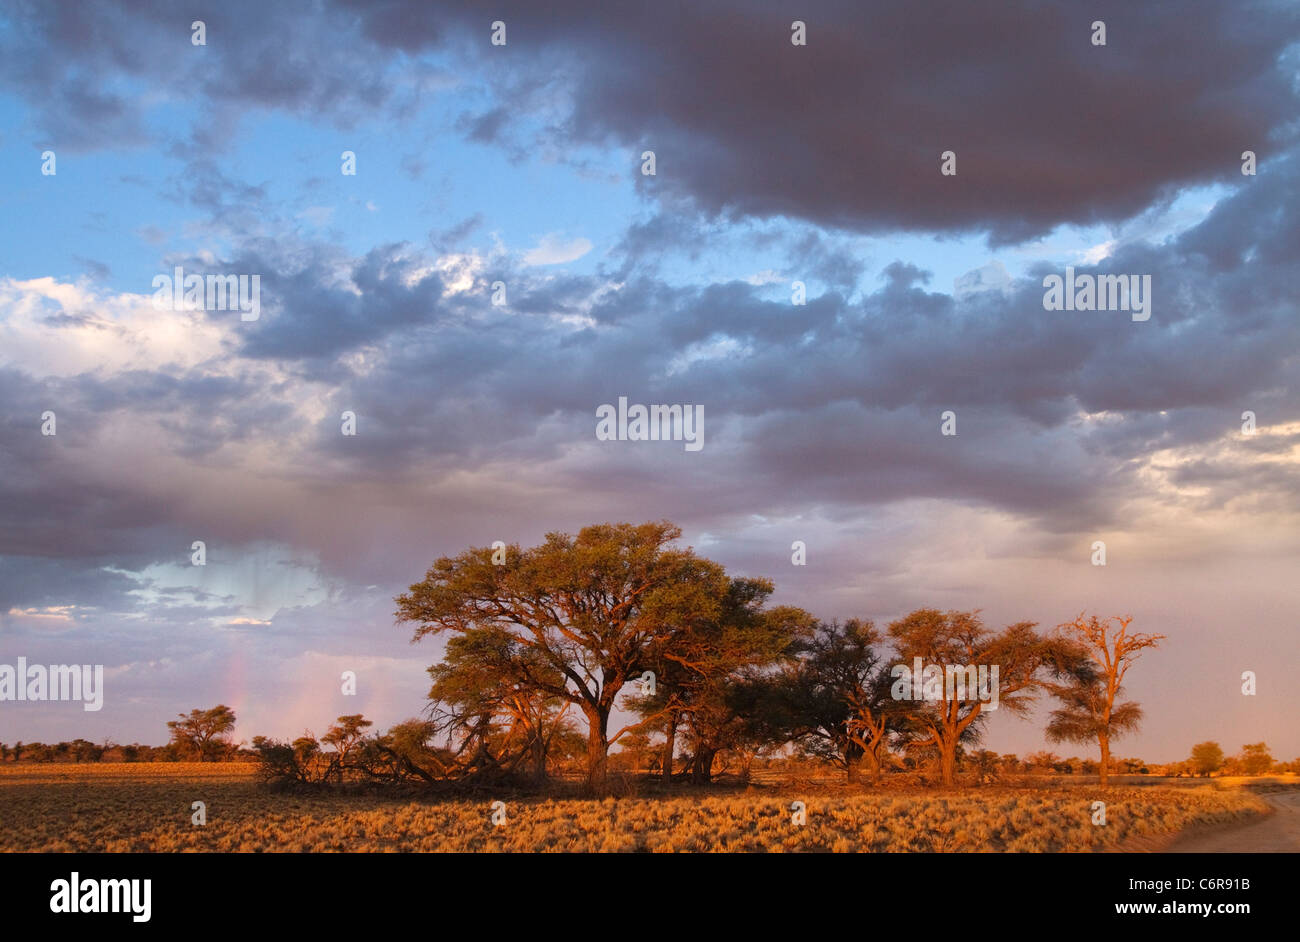 Un cluster de Camelthorn arbres (Acacia erioloba) dans la chaude lumière vue contre un ciel nuageux Banque D'Images